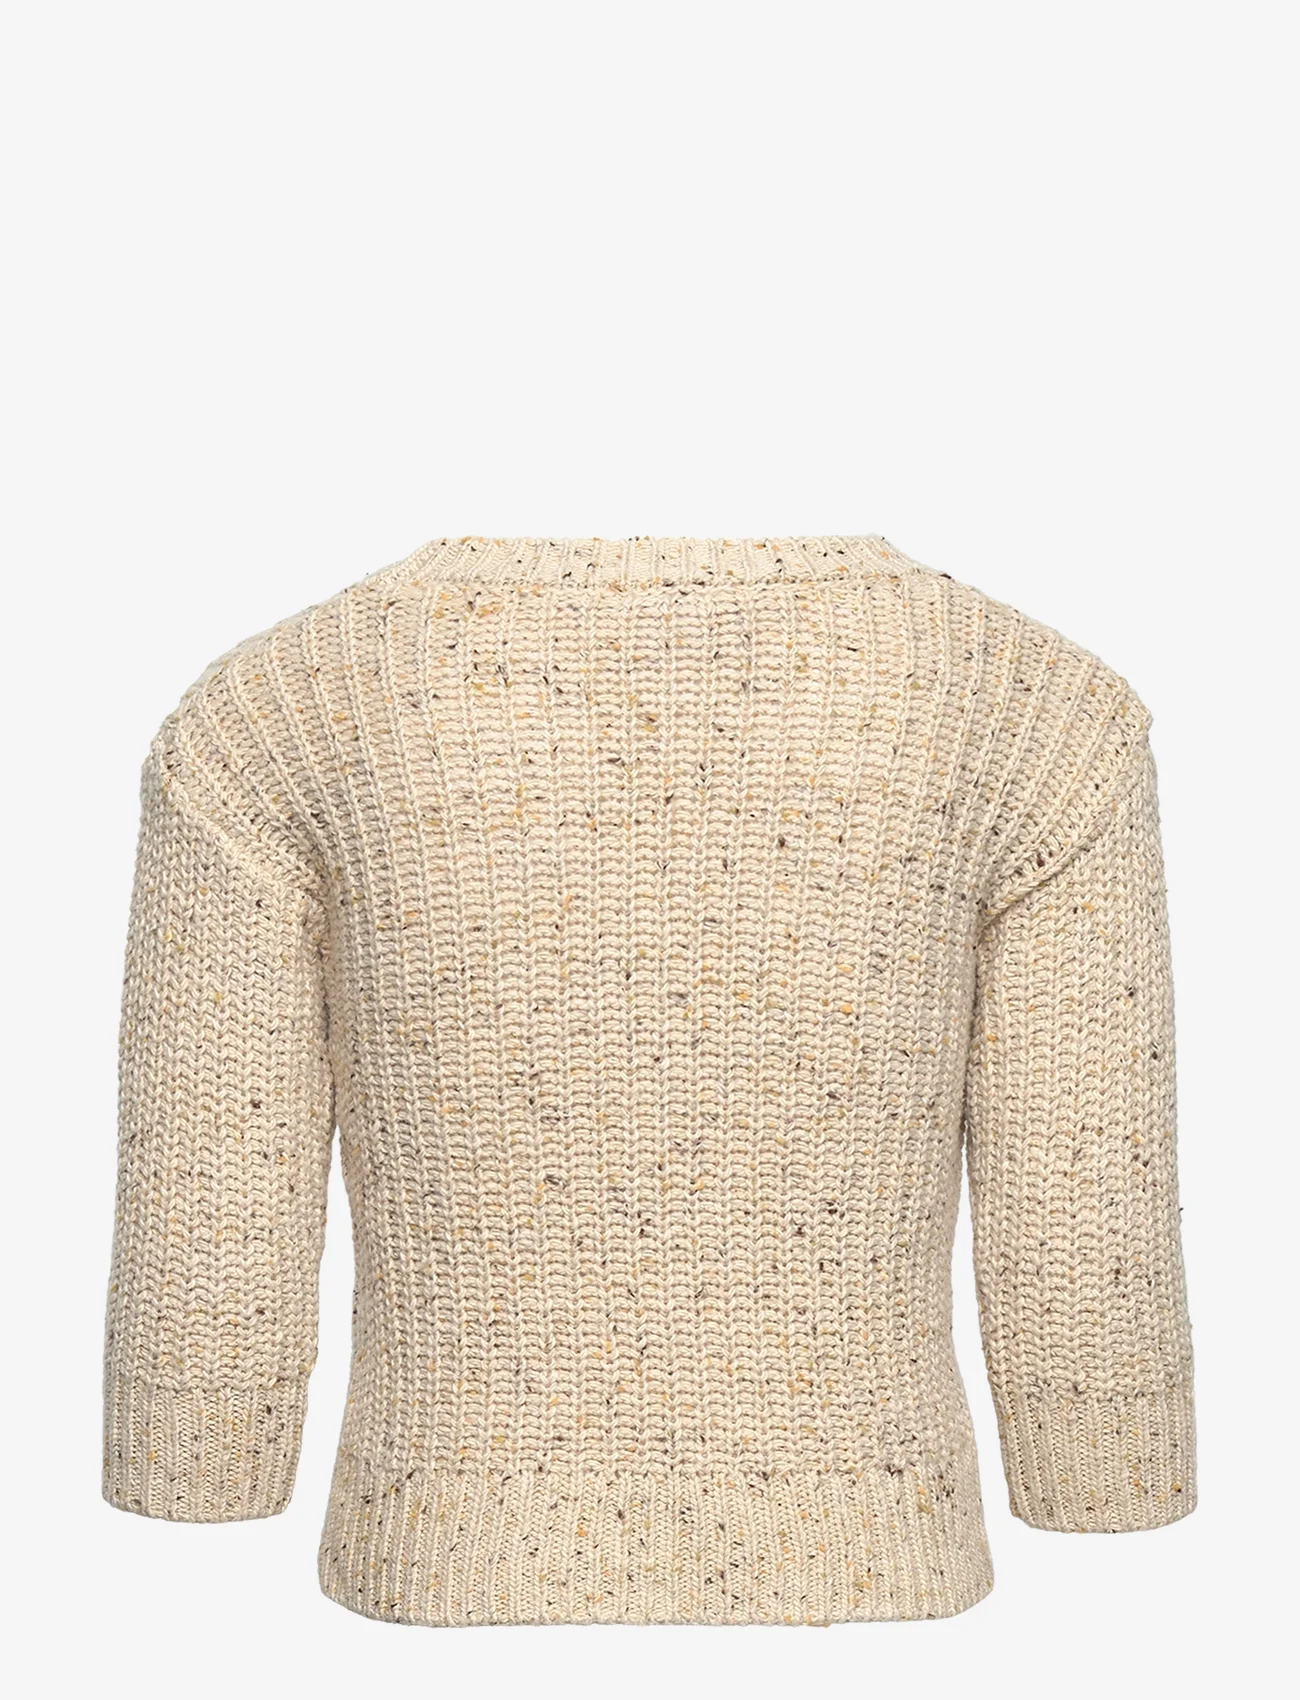 Lindex - Sweater knitted melange - jumpers - light beige - 1